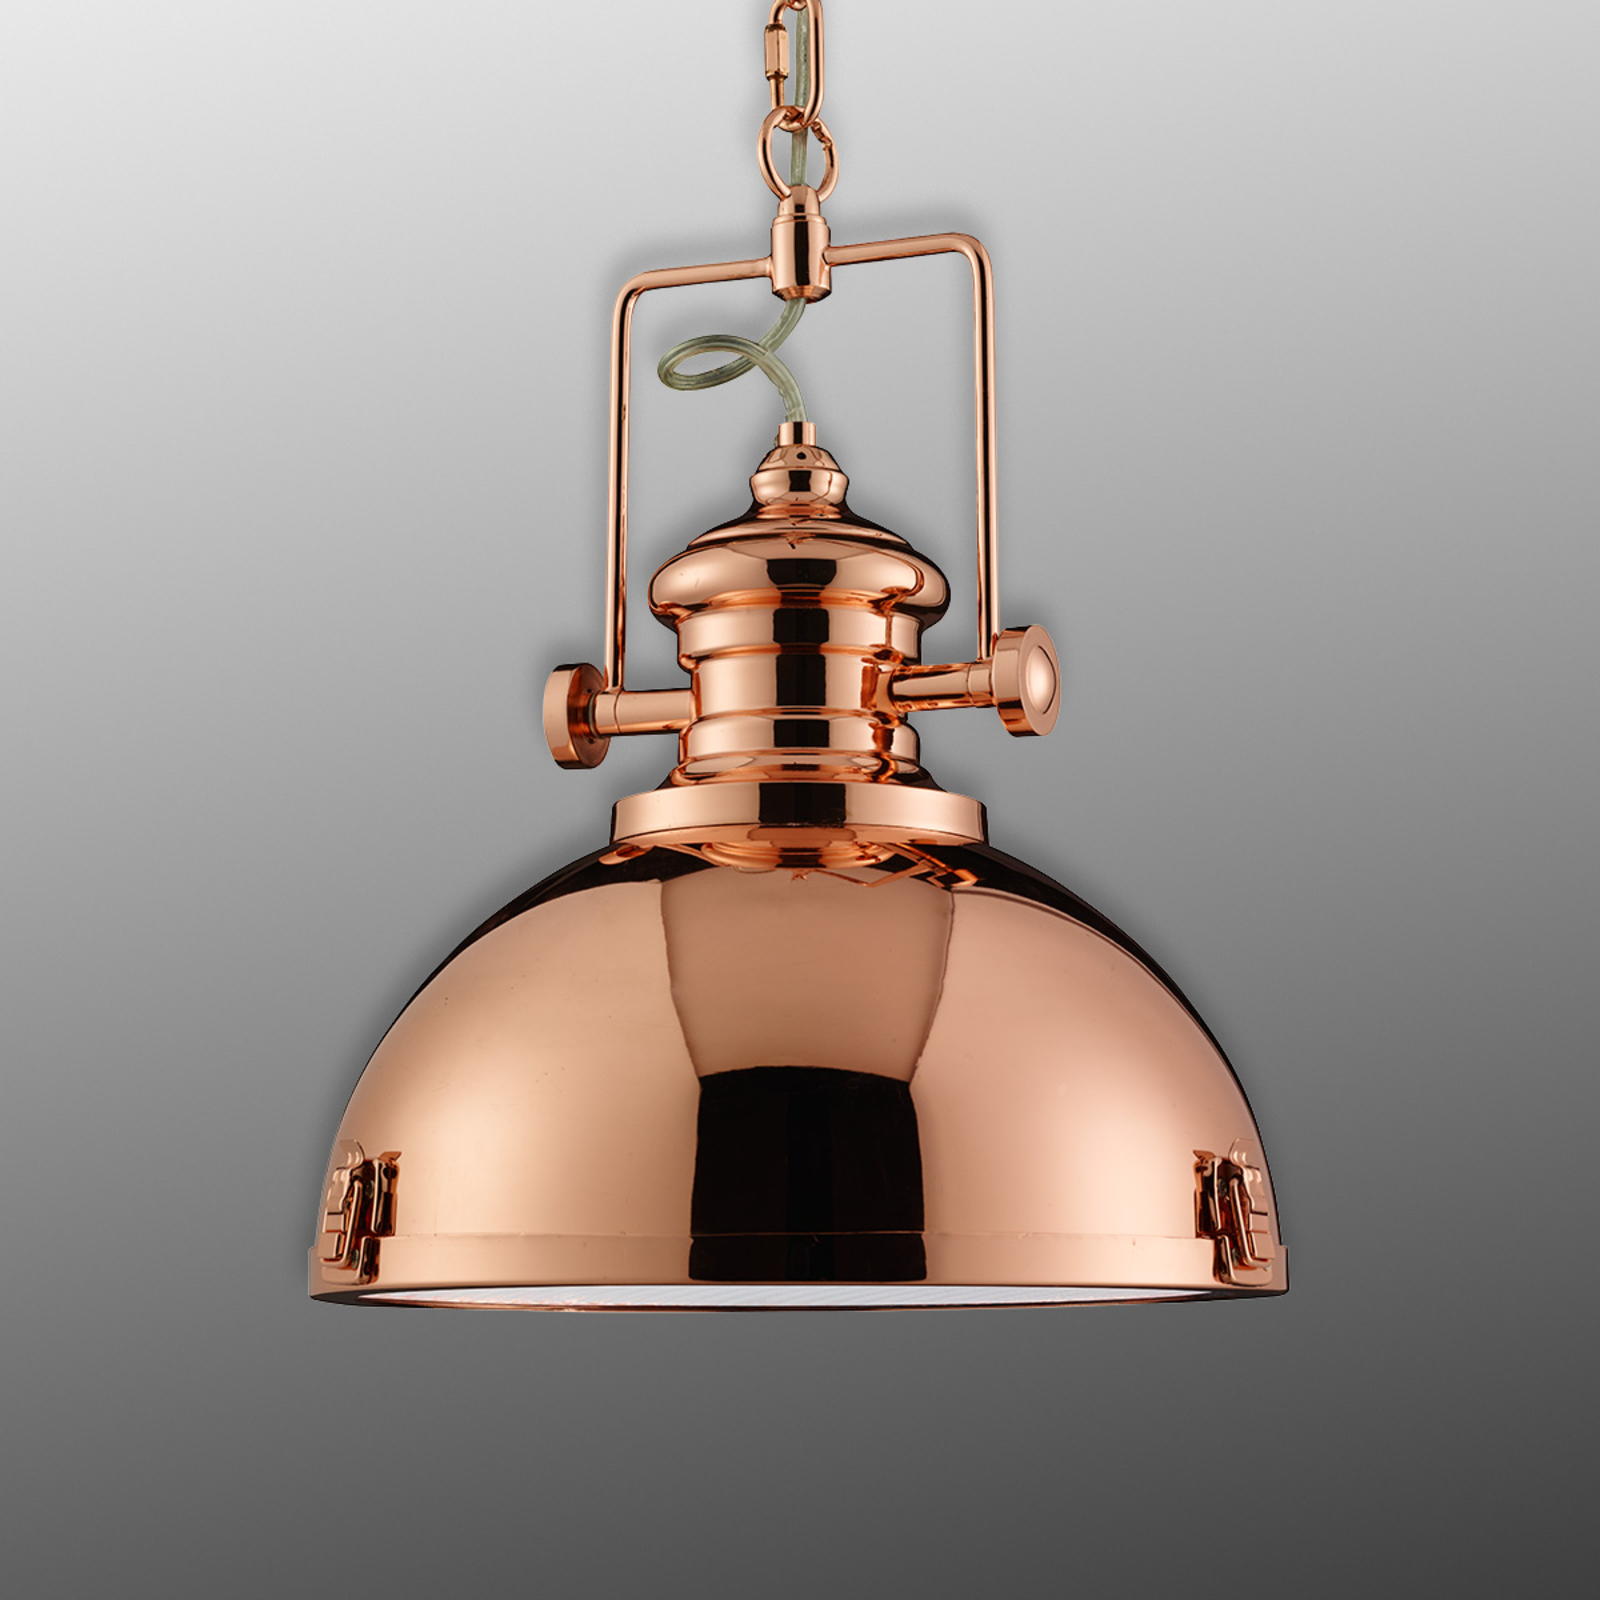 Lampă suspendată din metal, design industrial, de culoare cupru